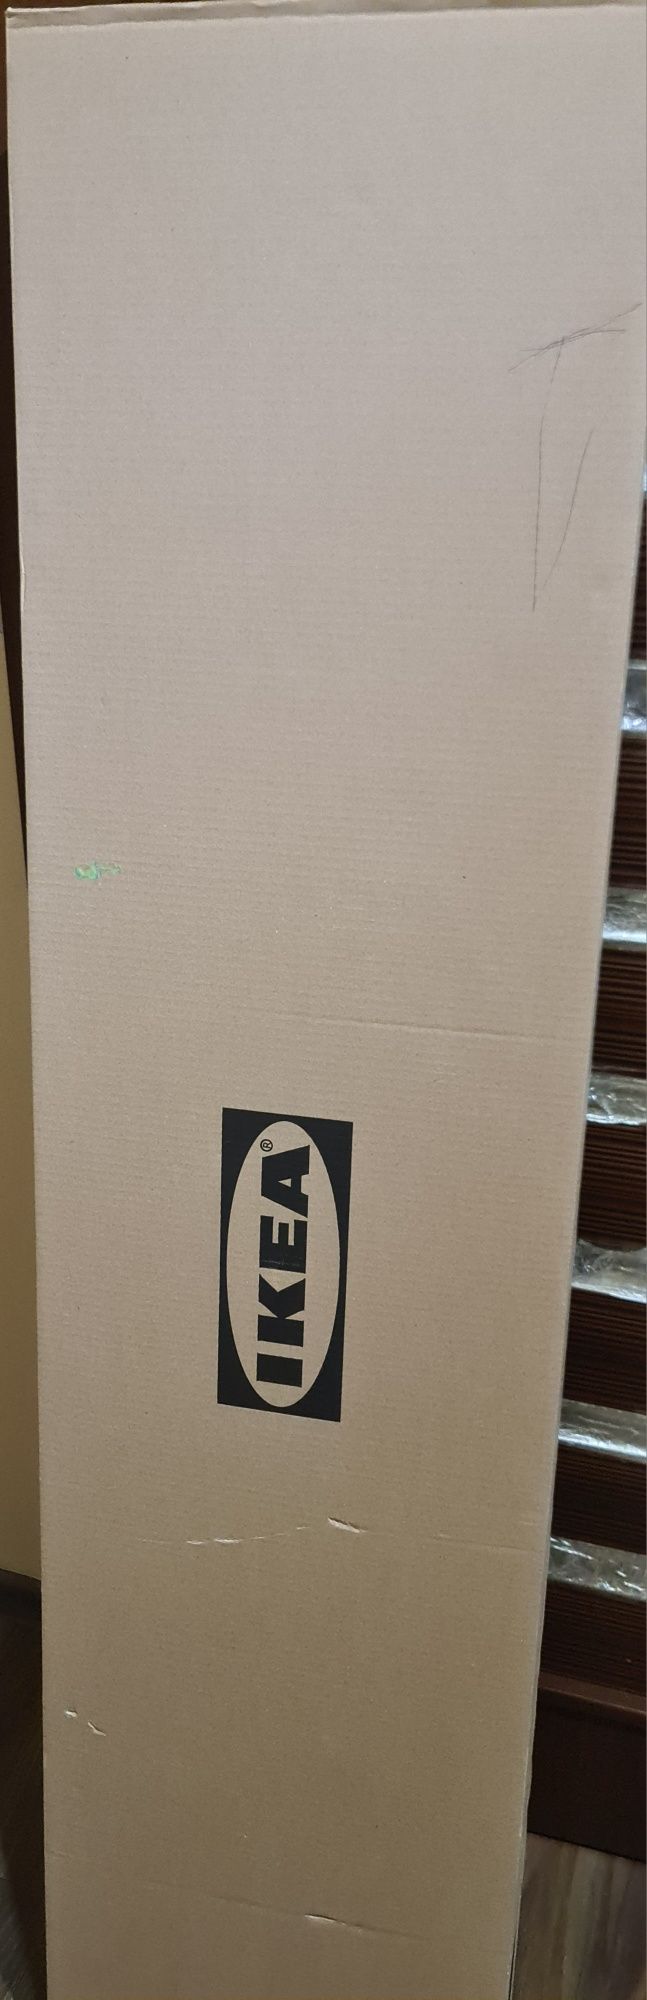 NOWA HEMNES półka ścienna czarno-brązowy Ikea w kartonie